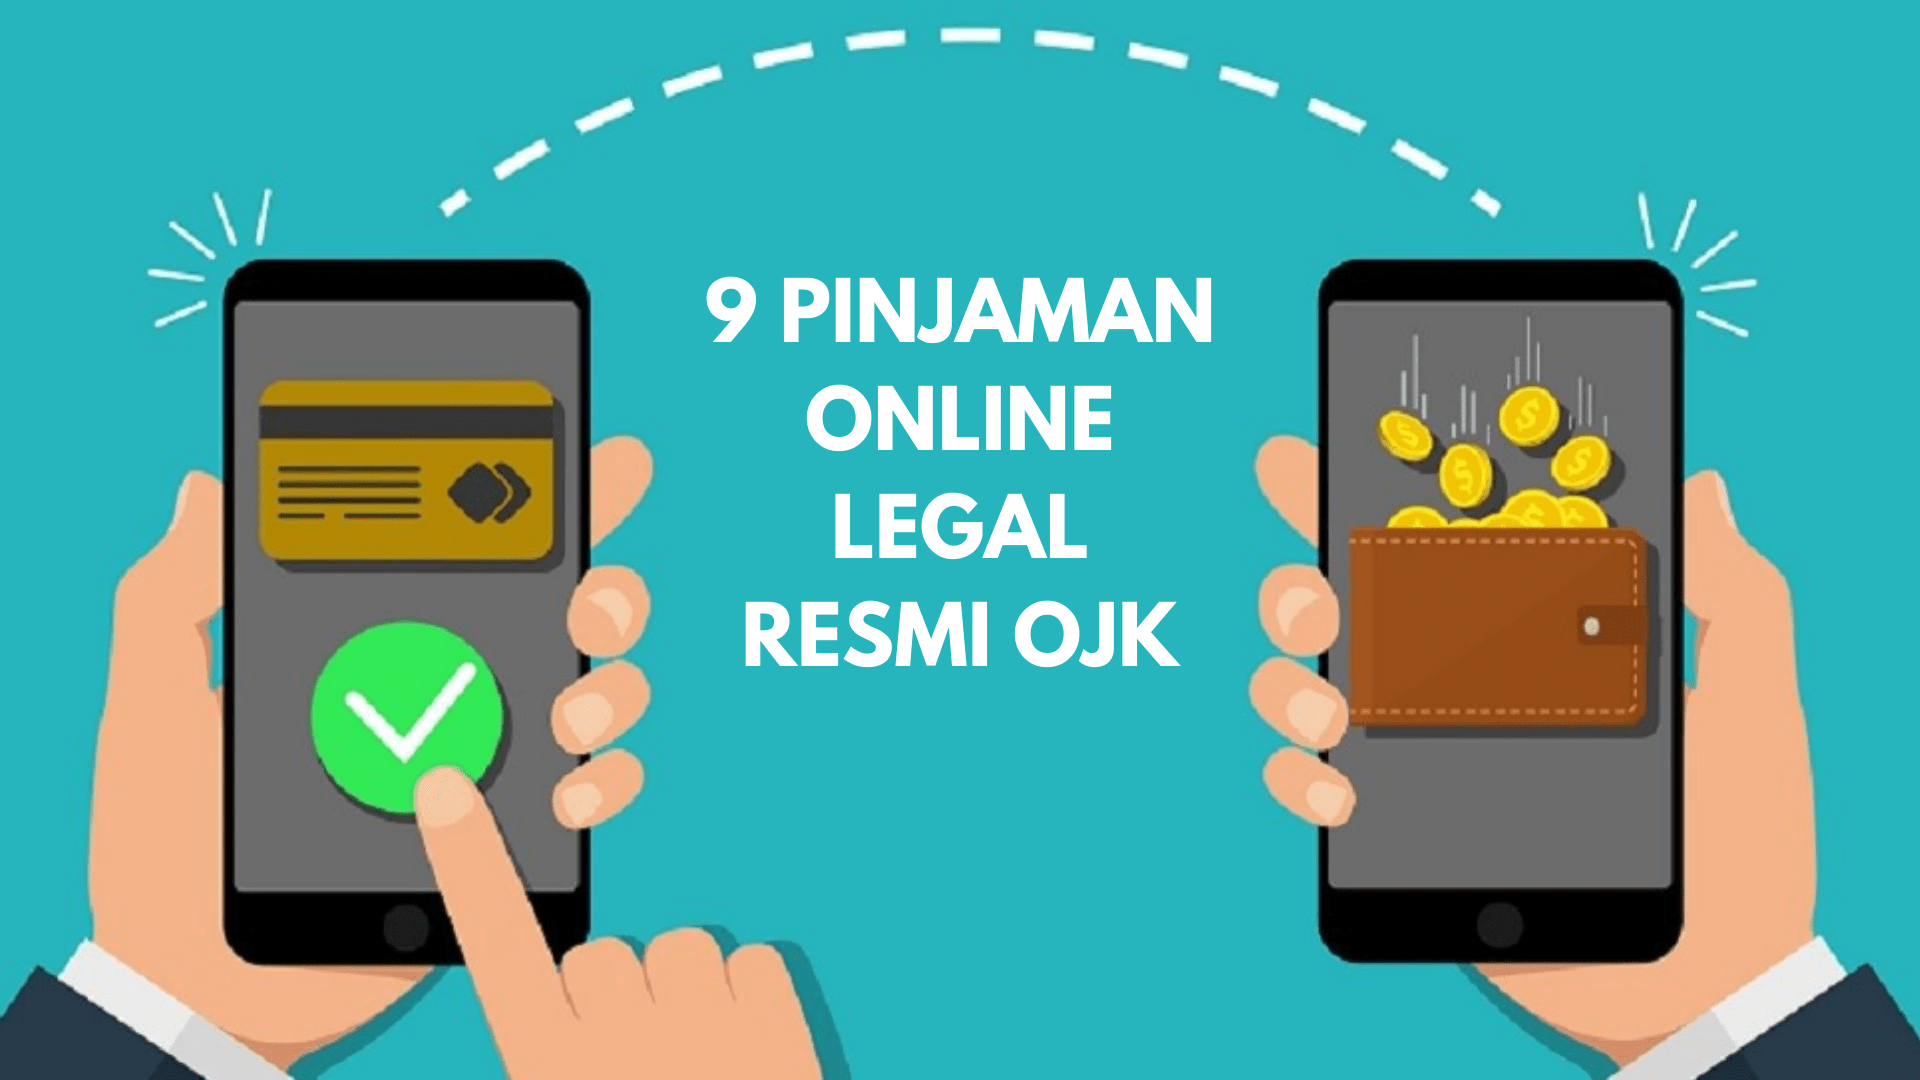 9 Pinjaman Online Bunga Rendah Legal Terdaftar OJK, Bisa Untuk Kredit HP Online tanpa DP